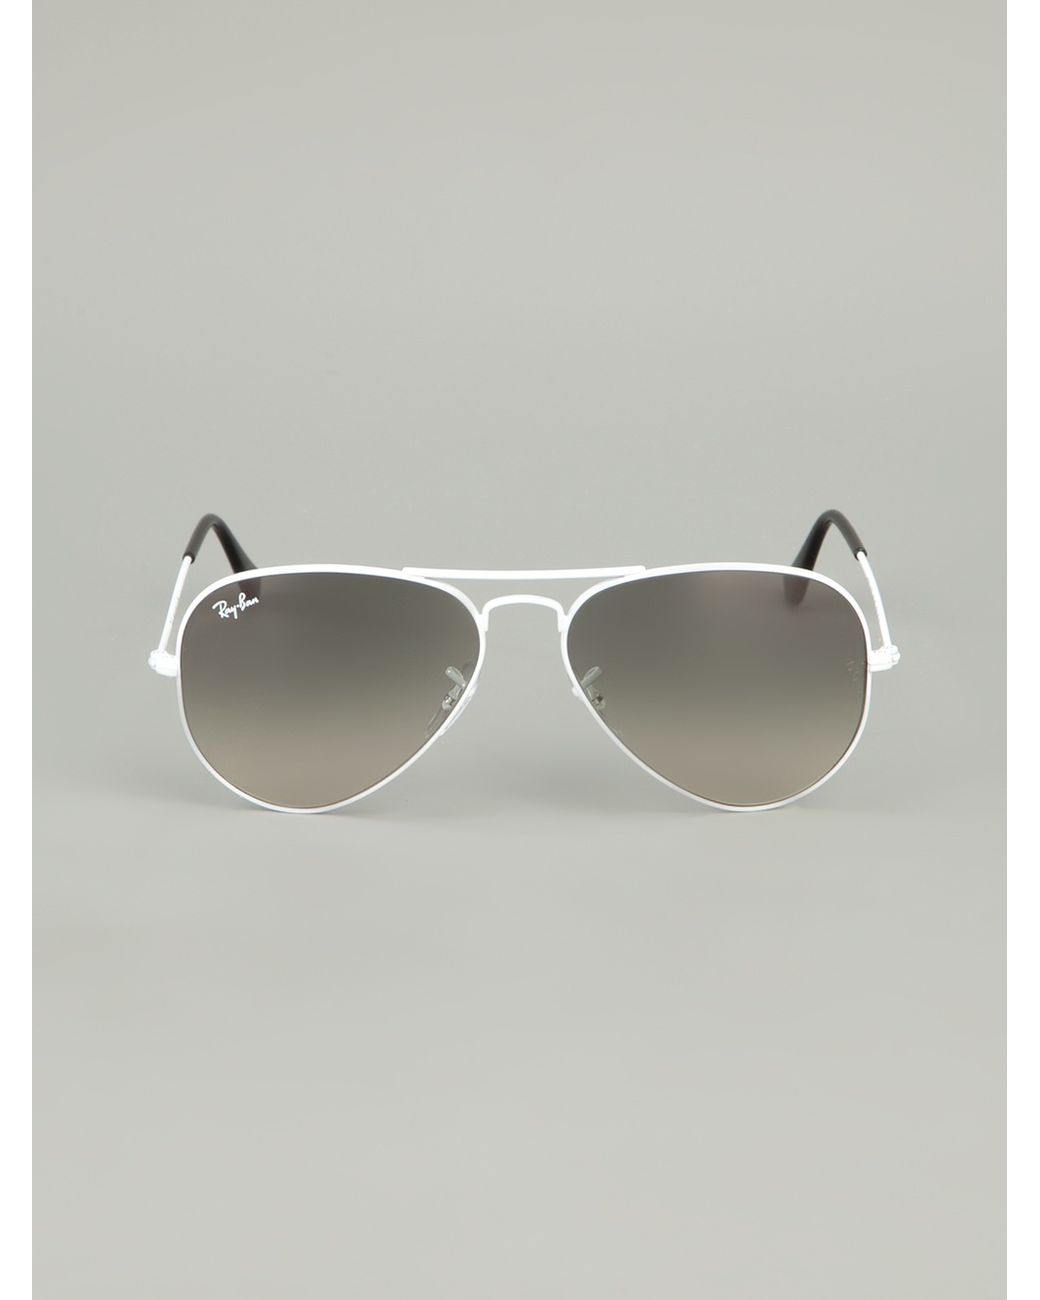 Total 39+ imagen white frame ray ban sunglasses